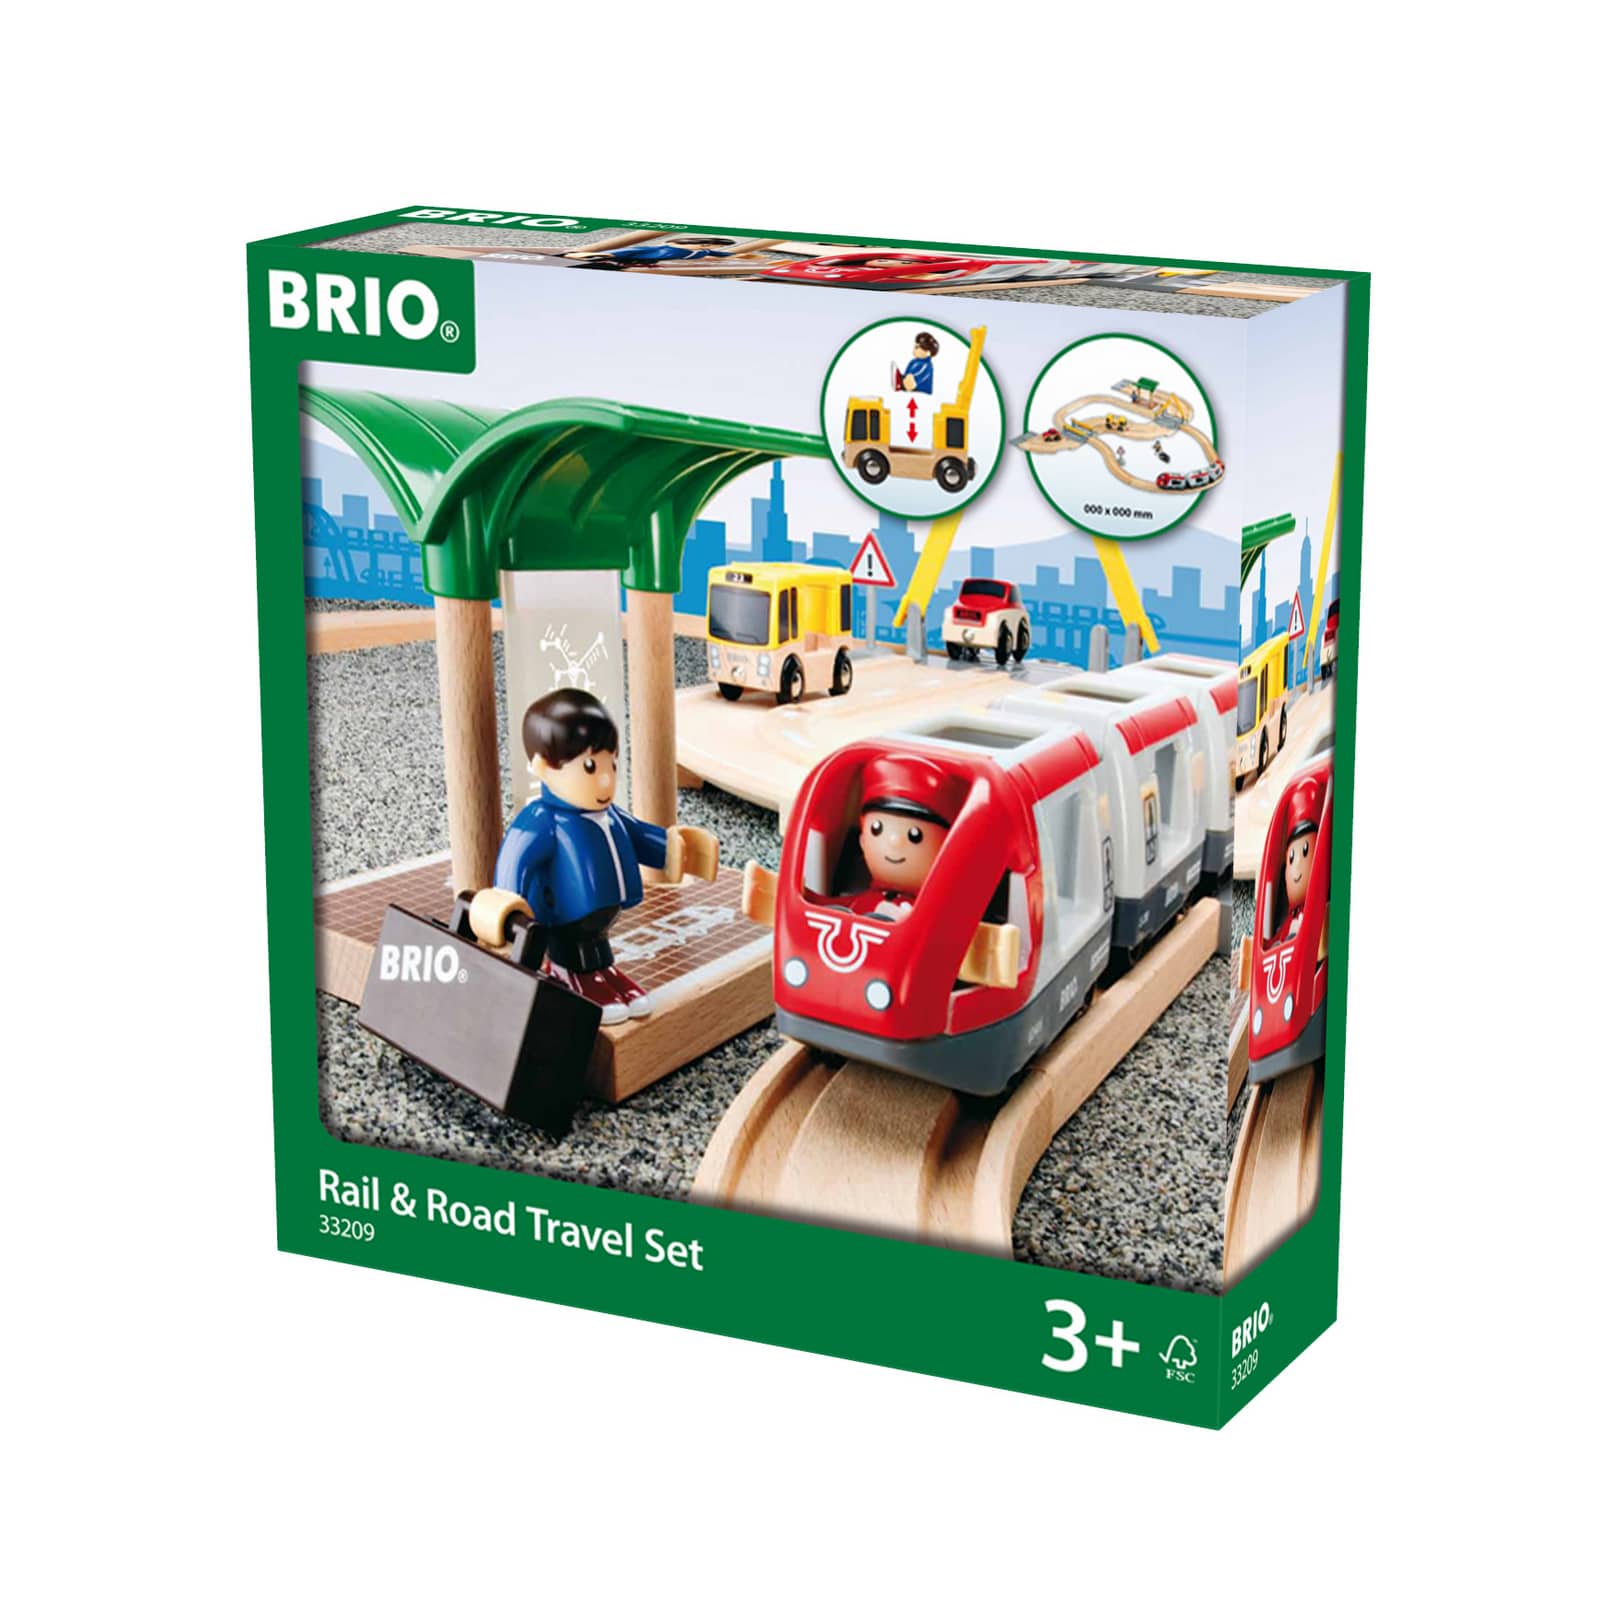 Брио. Брио 33209. Brio World Rail Road Travel Set железная дорога. Железная дорога Brio 33511. Brio стартовый набор из 33 элементов с переездом и станцией, 33209.